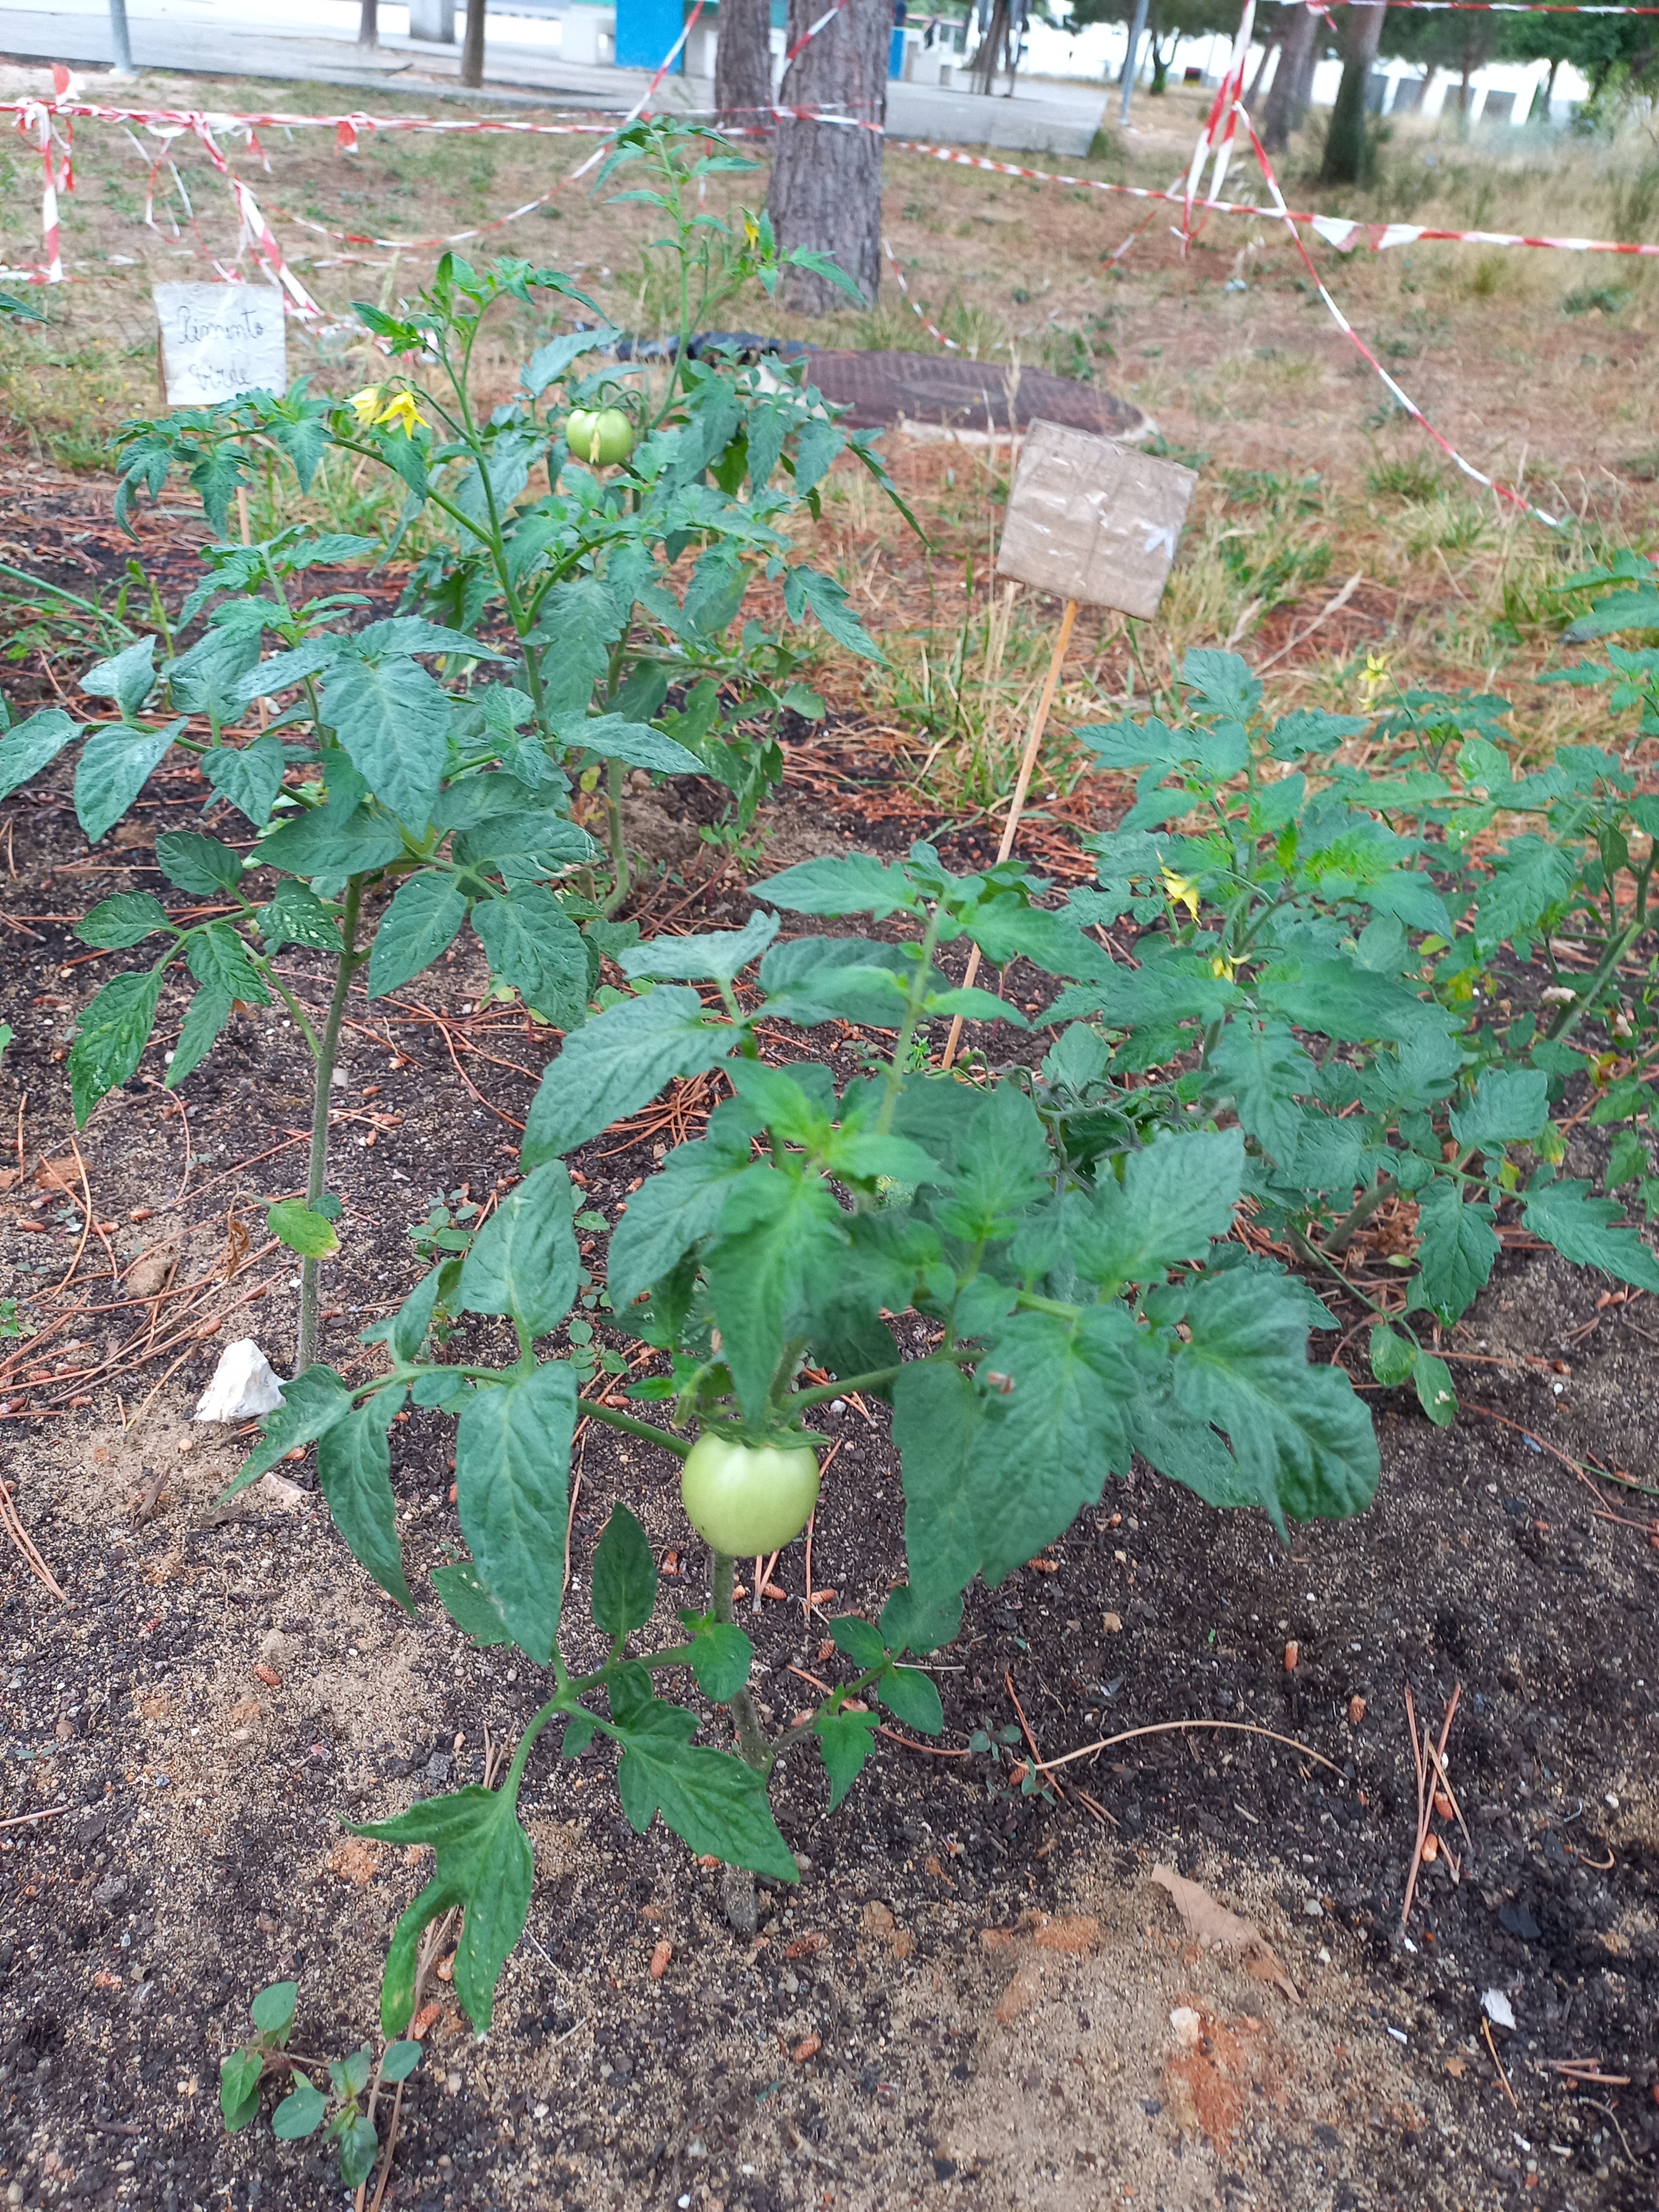 Na horta também pudemos encontrar um tomate.